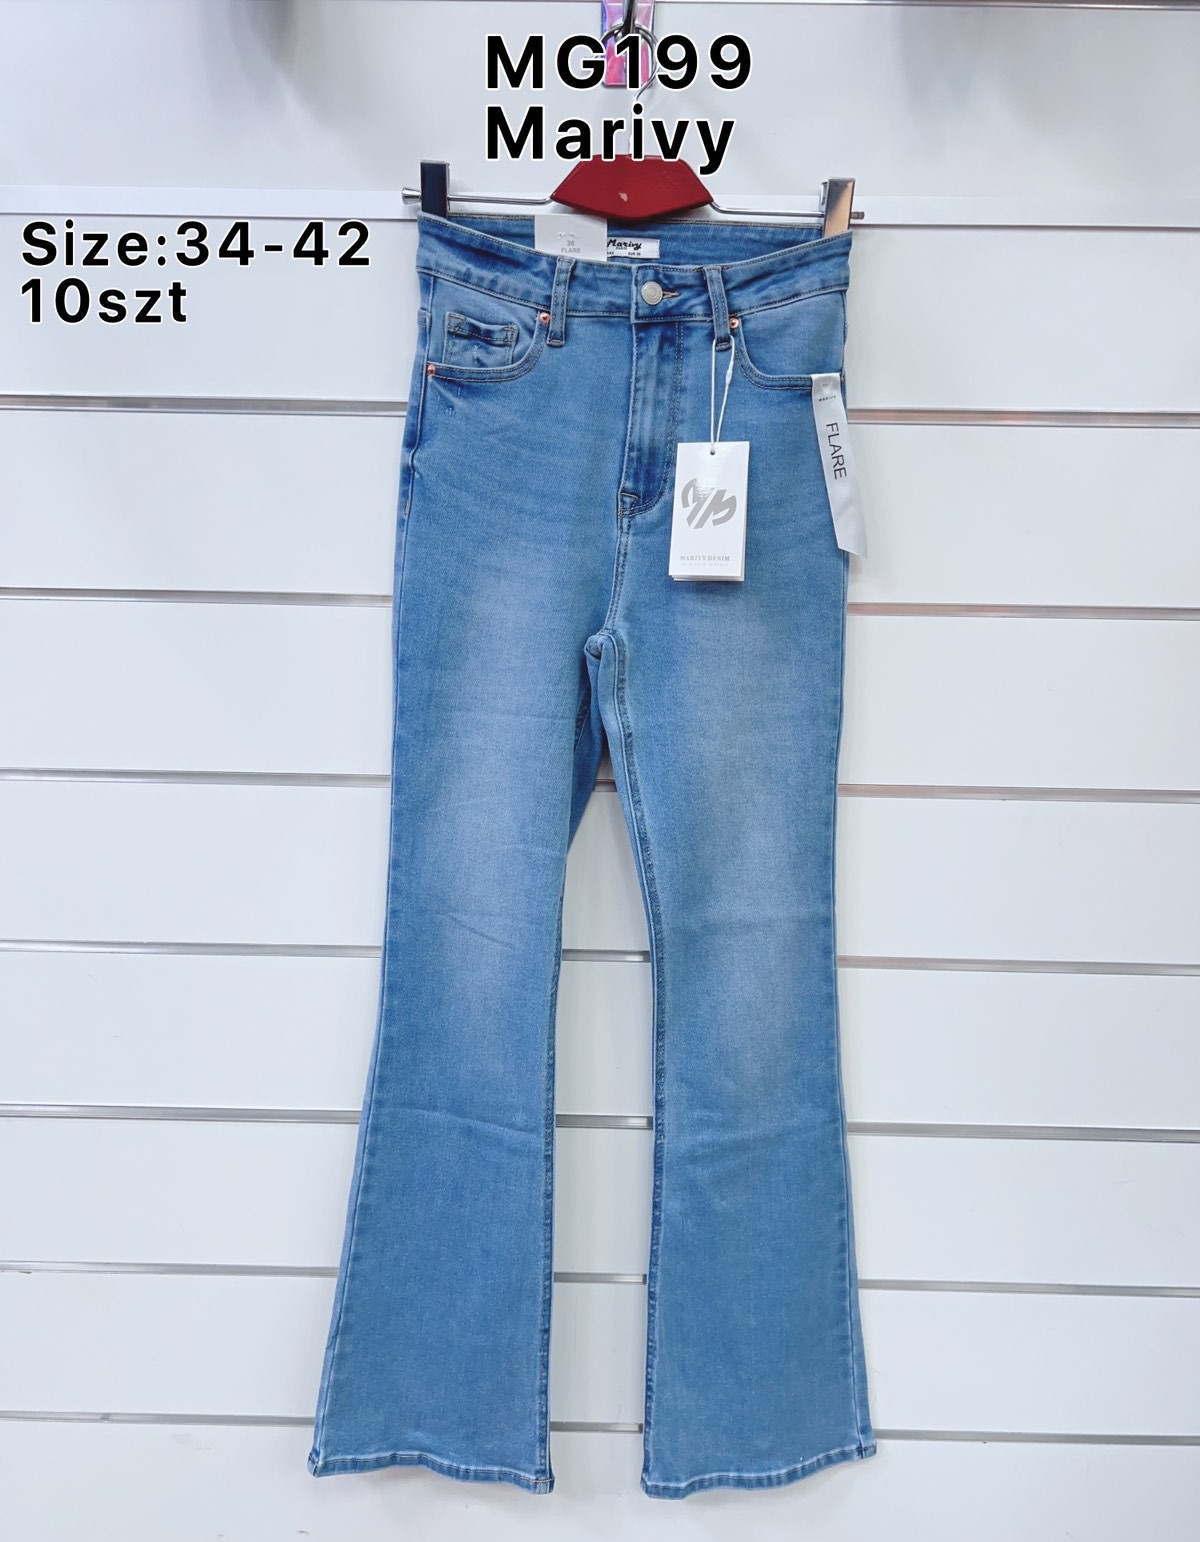 Spodnie  damskie jeans Roz  34-42.  1 kolor . Paczka 10szt